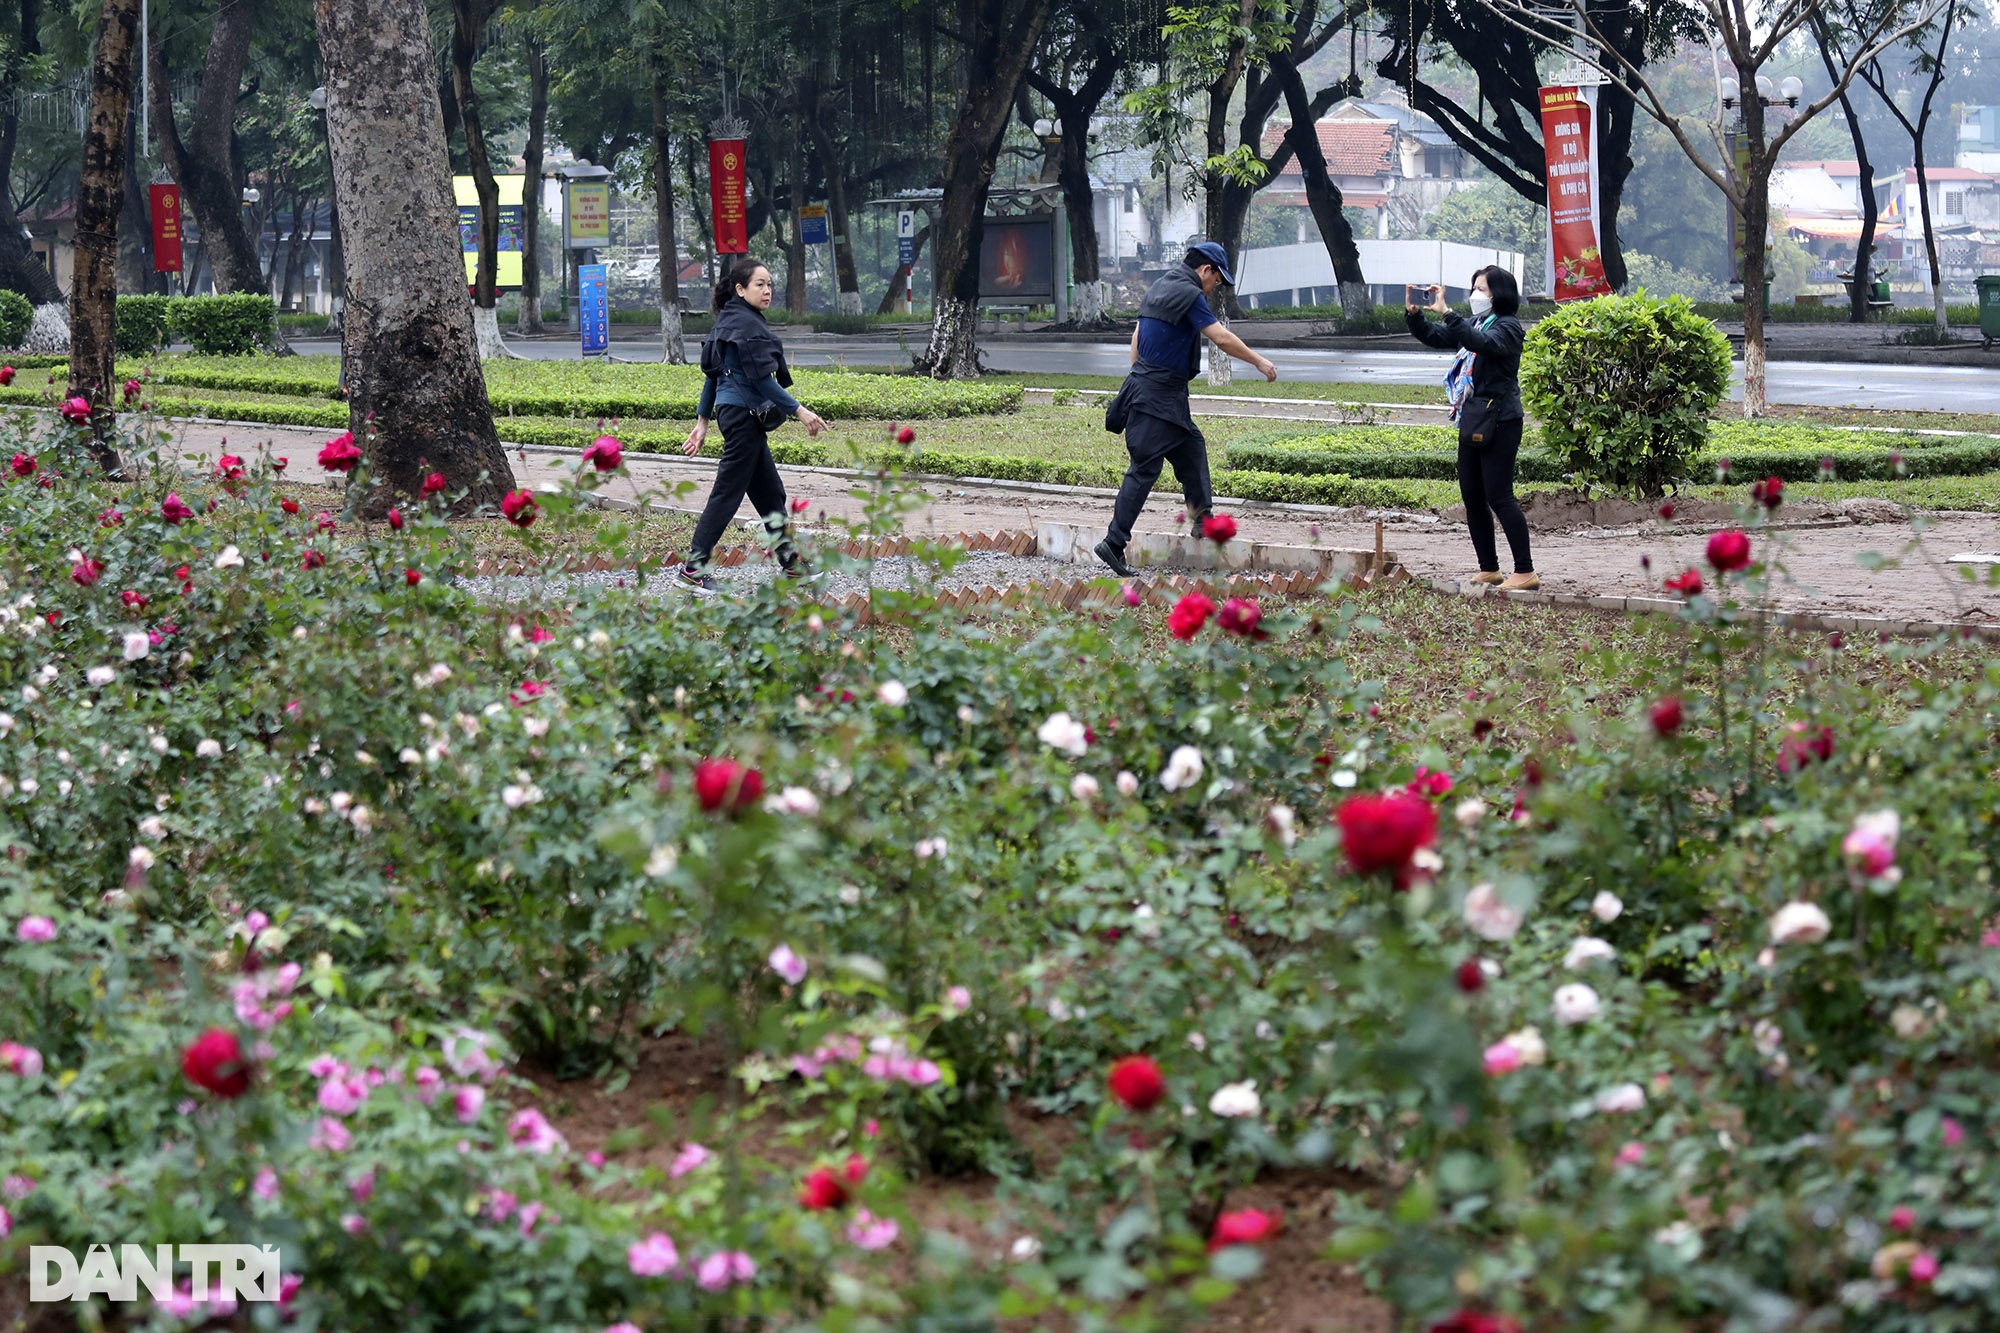 Thay 10.000 cây hoa hồng vào vị trí hàng rào vừa phá ở Công viên Thống Nhất - 11